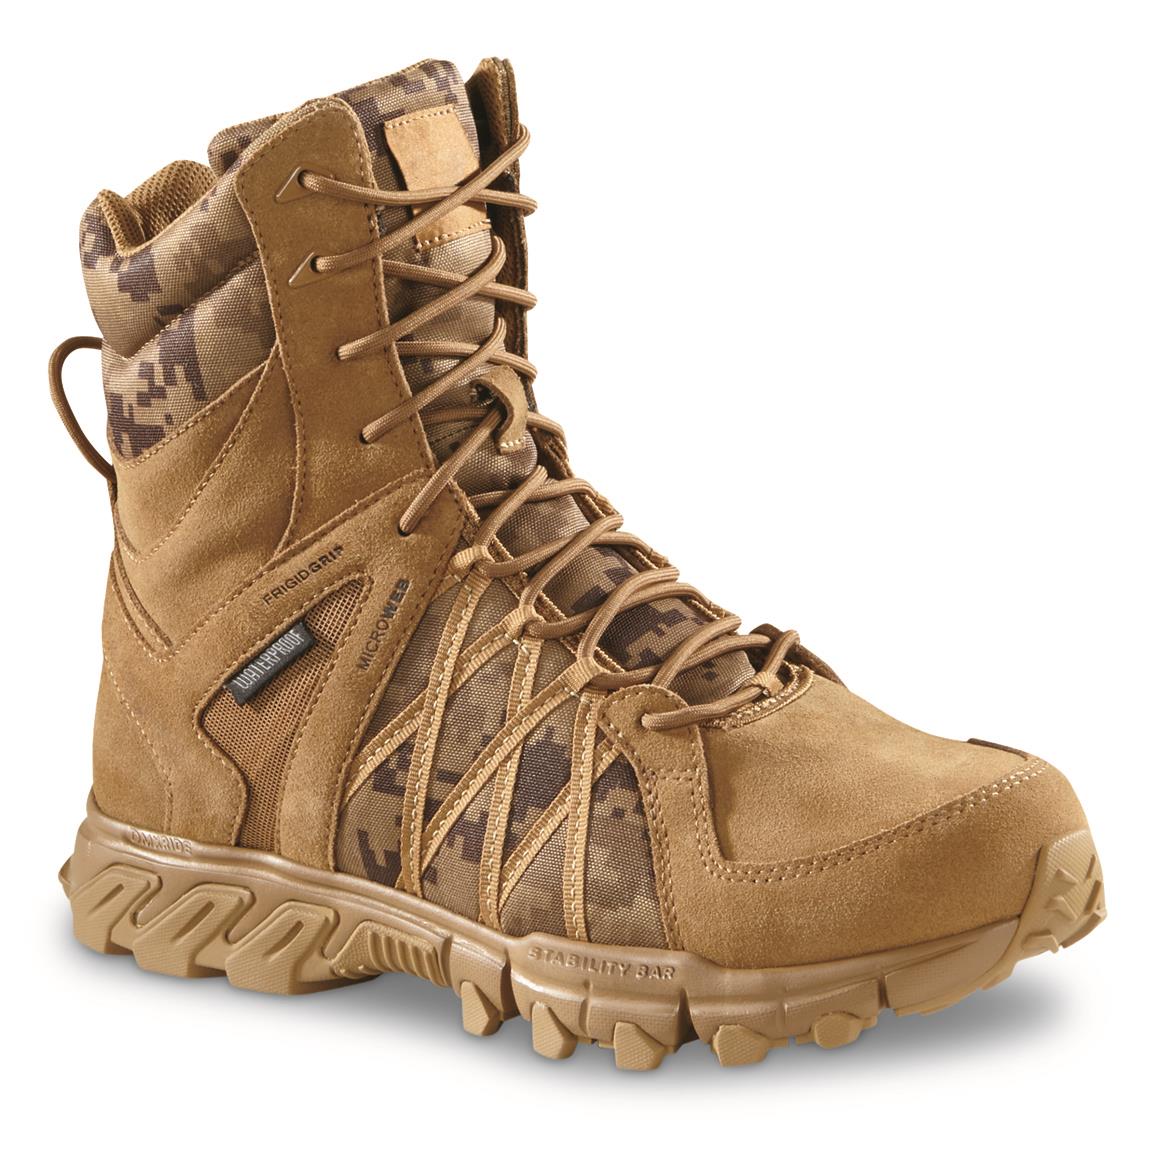 Reebok Men's Trailgrip 8" Side-zip Waterproof Tactical Boots, Digital Camo, Coyote Digital Camo